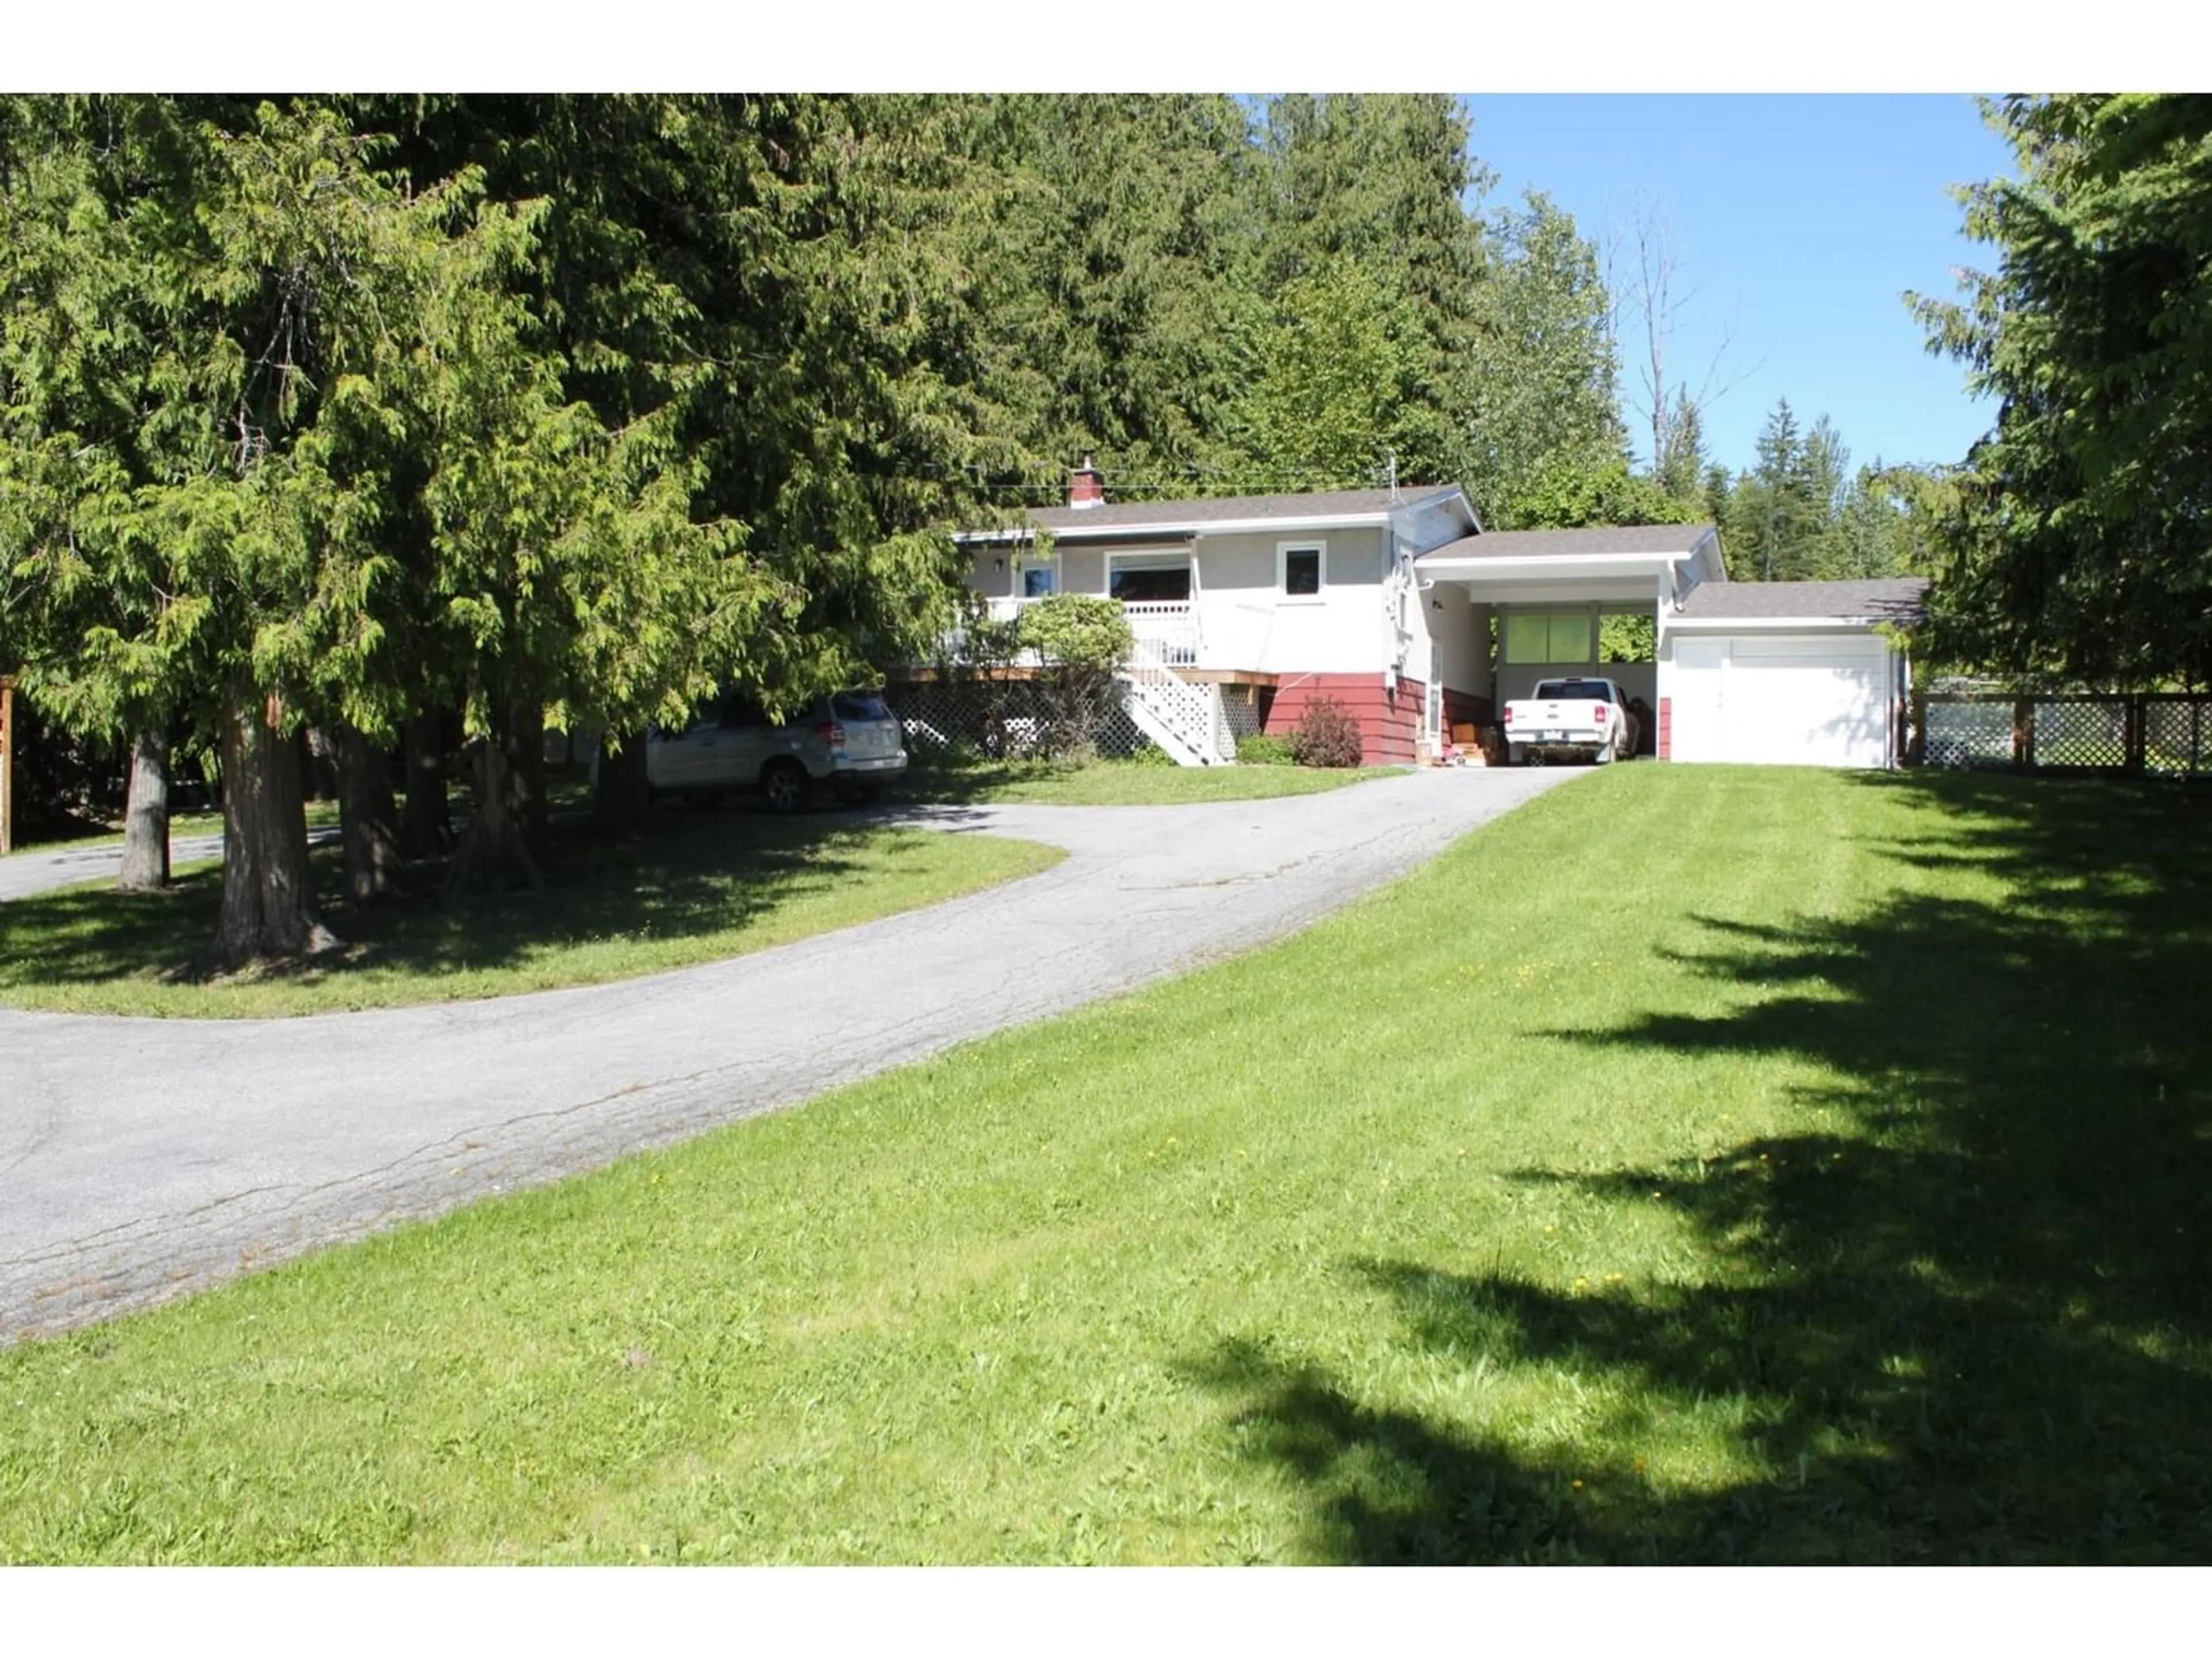 Frontside or backside of a home for 270 GLENACRES ROAD, Nakusp British Columbia V0G1R0